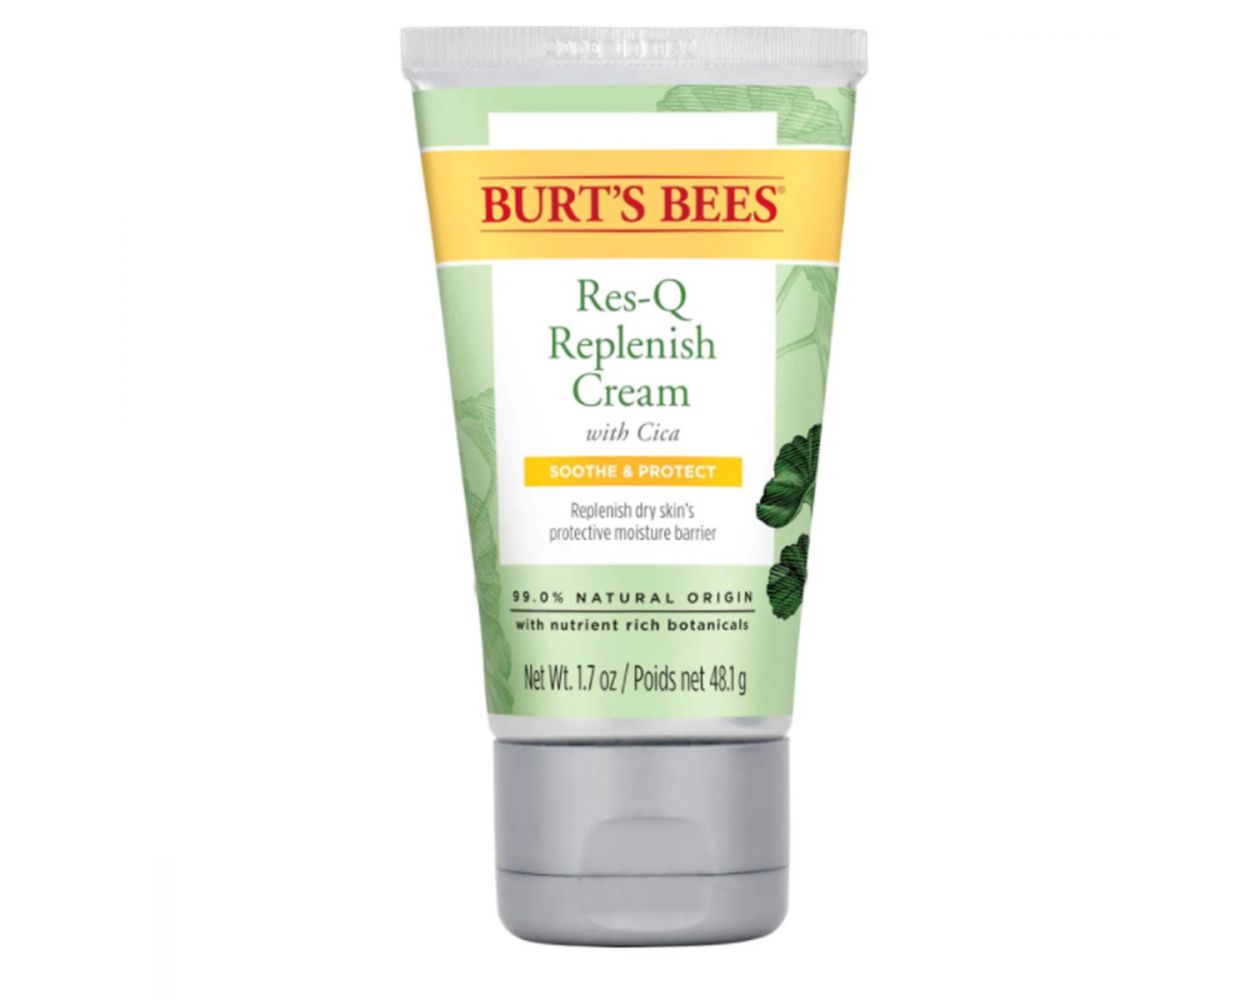 Burt's Bees Res-Q Replenish Cream